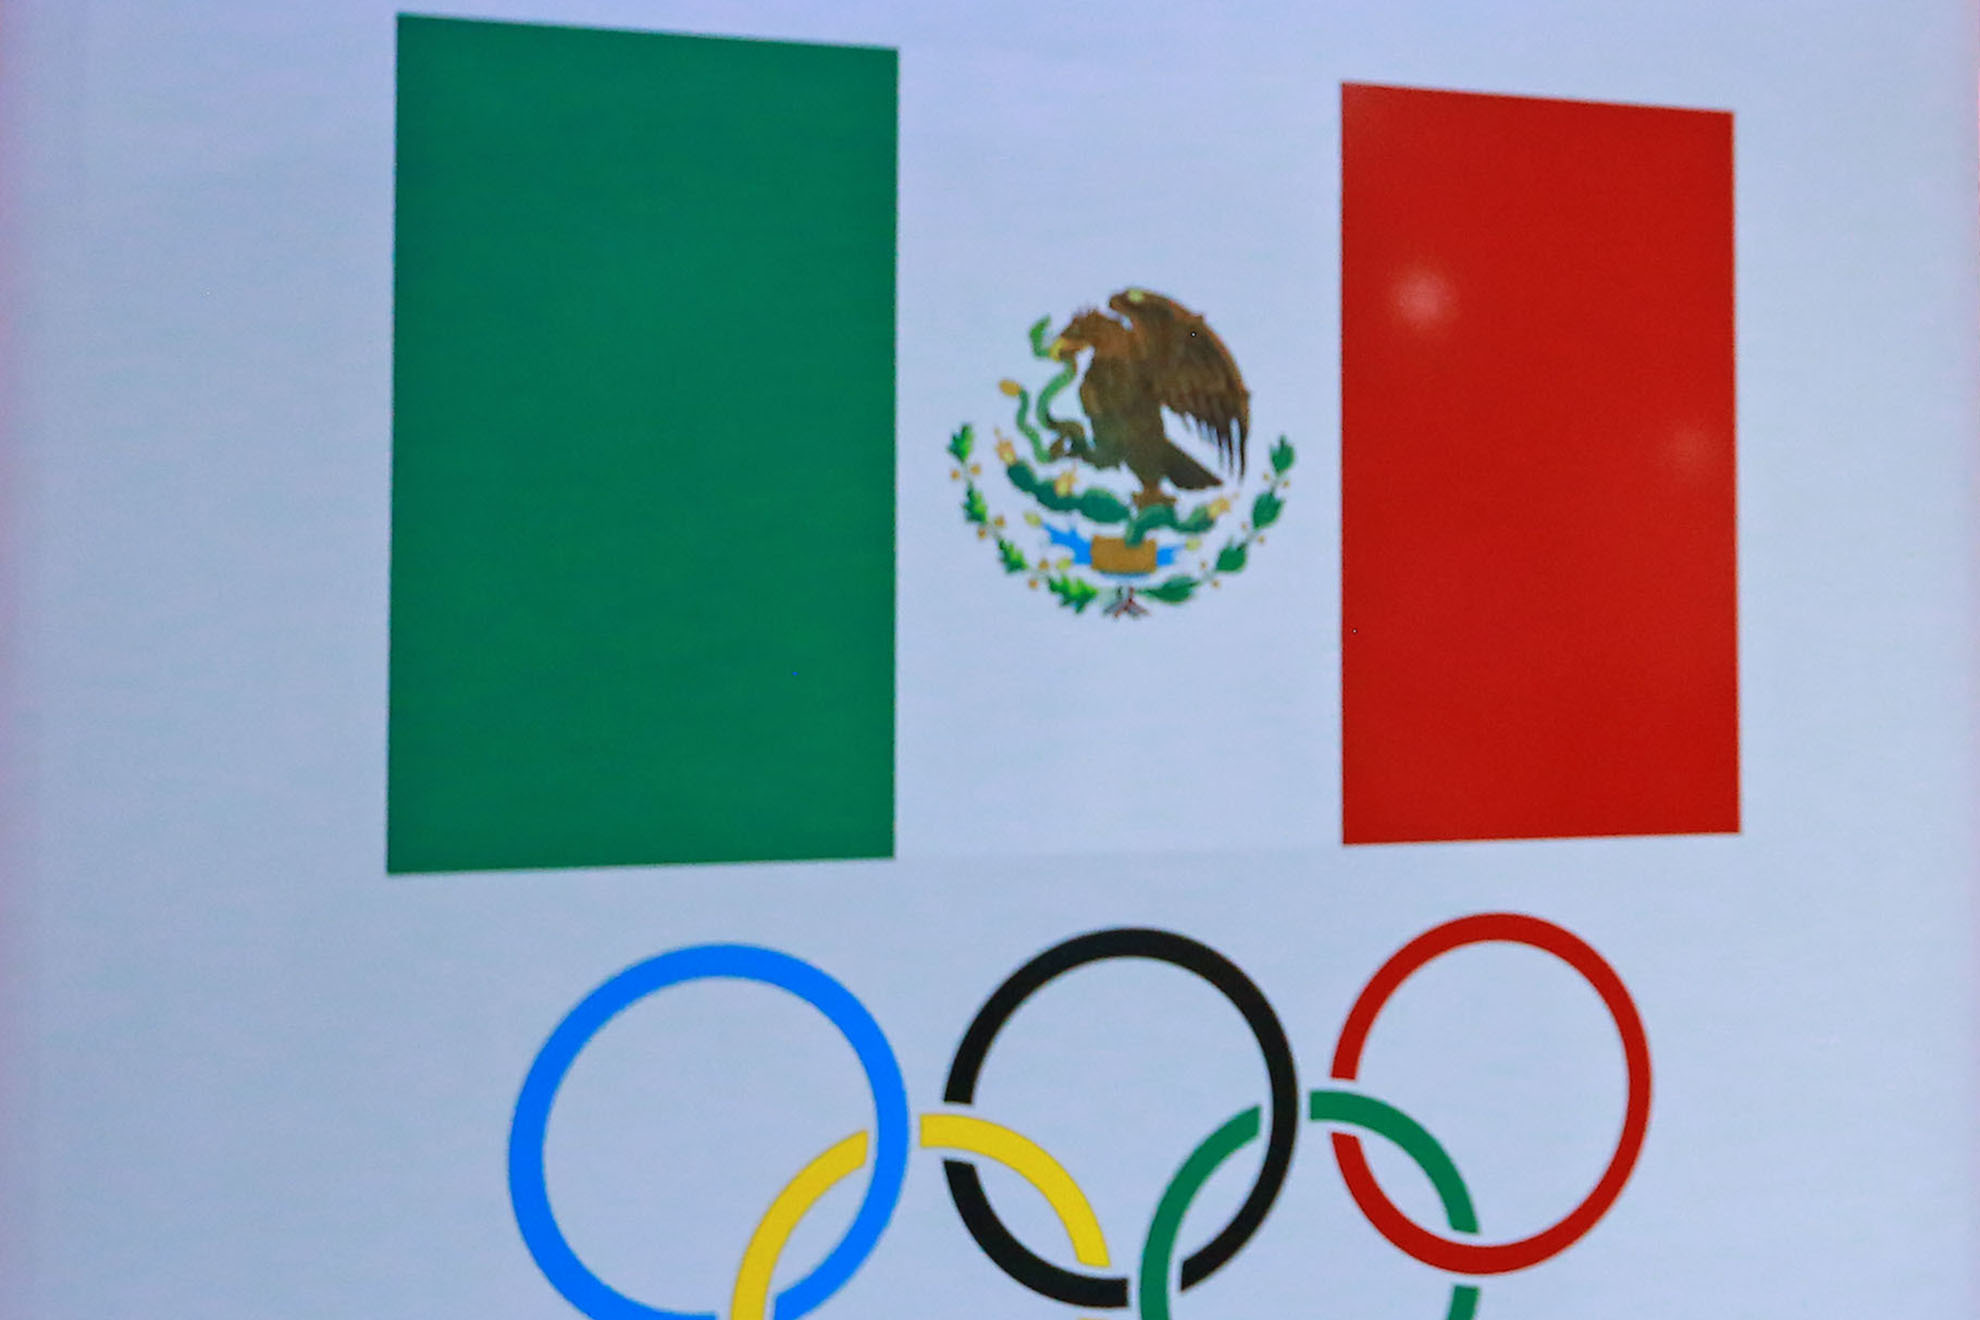 México presentará candidatura para los Juegos Olímpicos del 2036. Imago 7